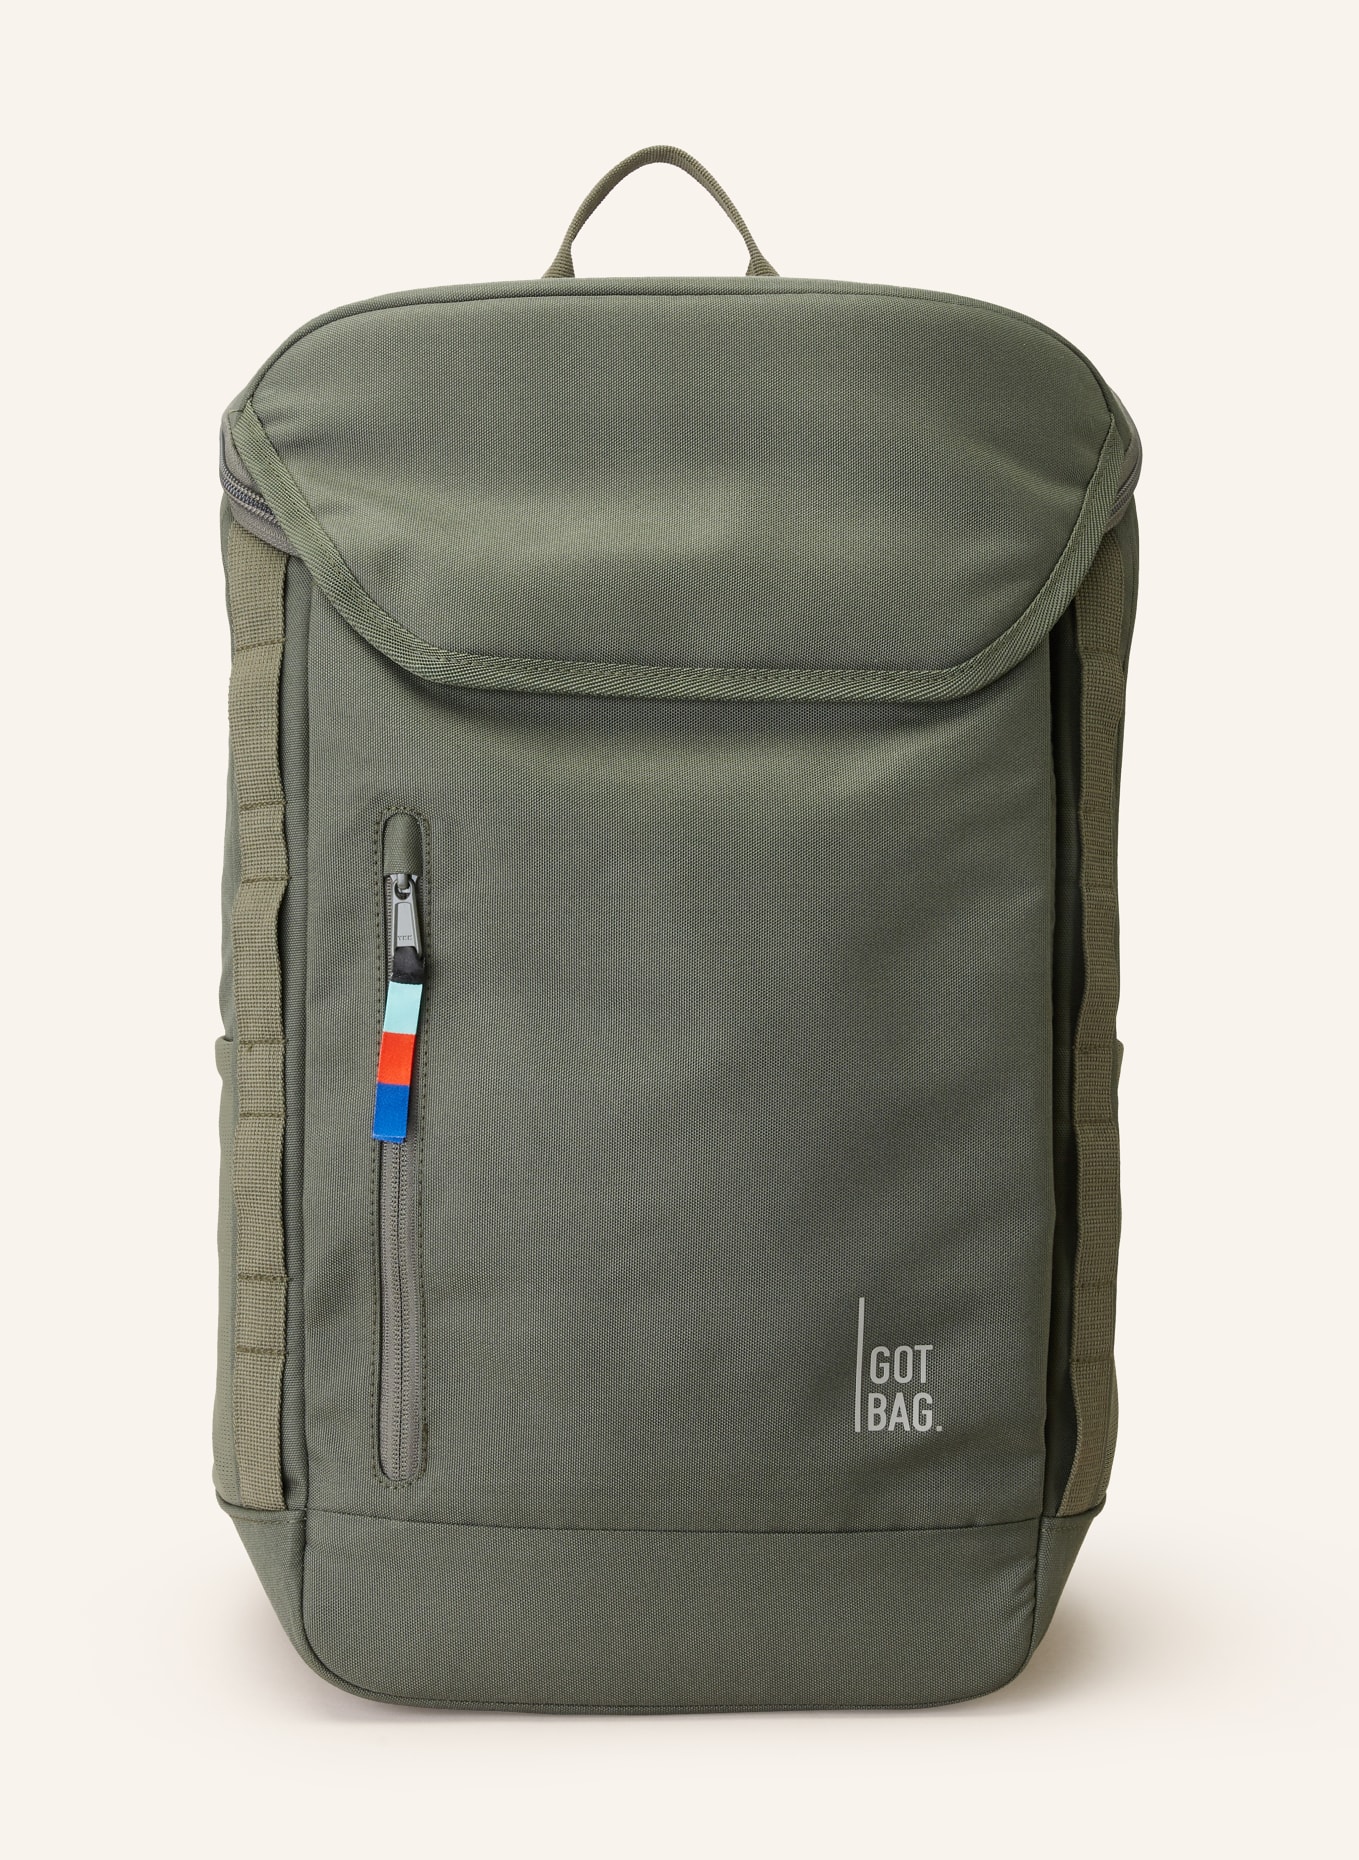 GOT BAG Plecak PRO PACK z kieszenią na laptop, Kolor: KHAKI (Obrazek 1)